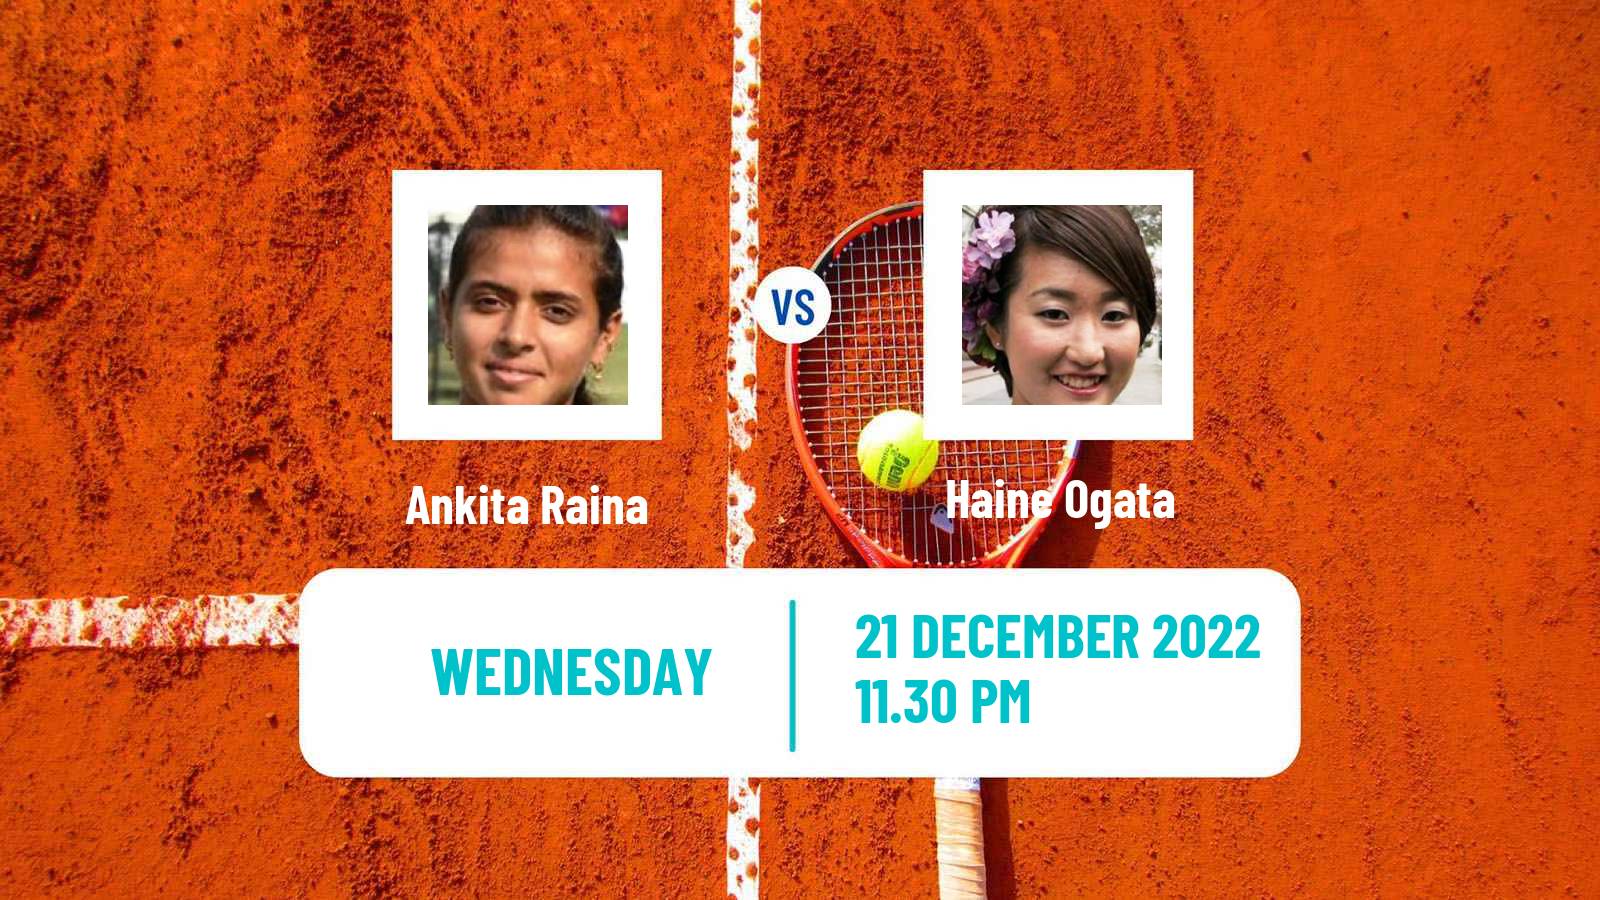 Tennis ITF Tournaments Ankita Raina - Haine Ogata